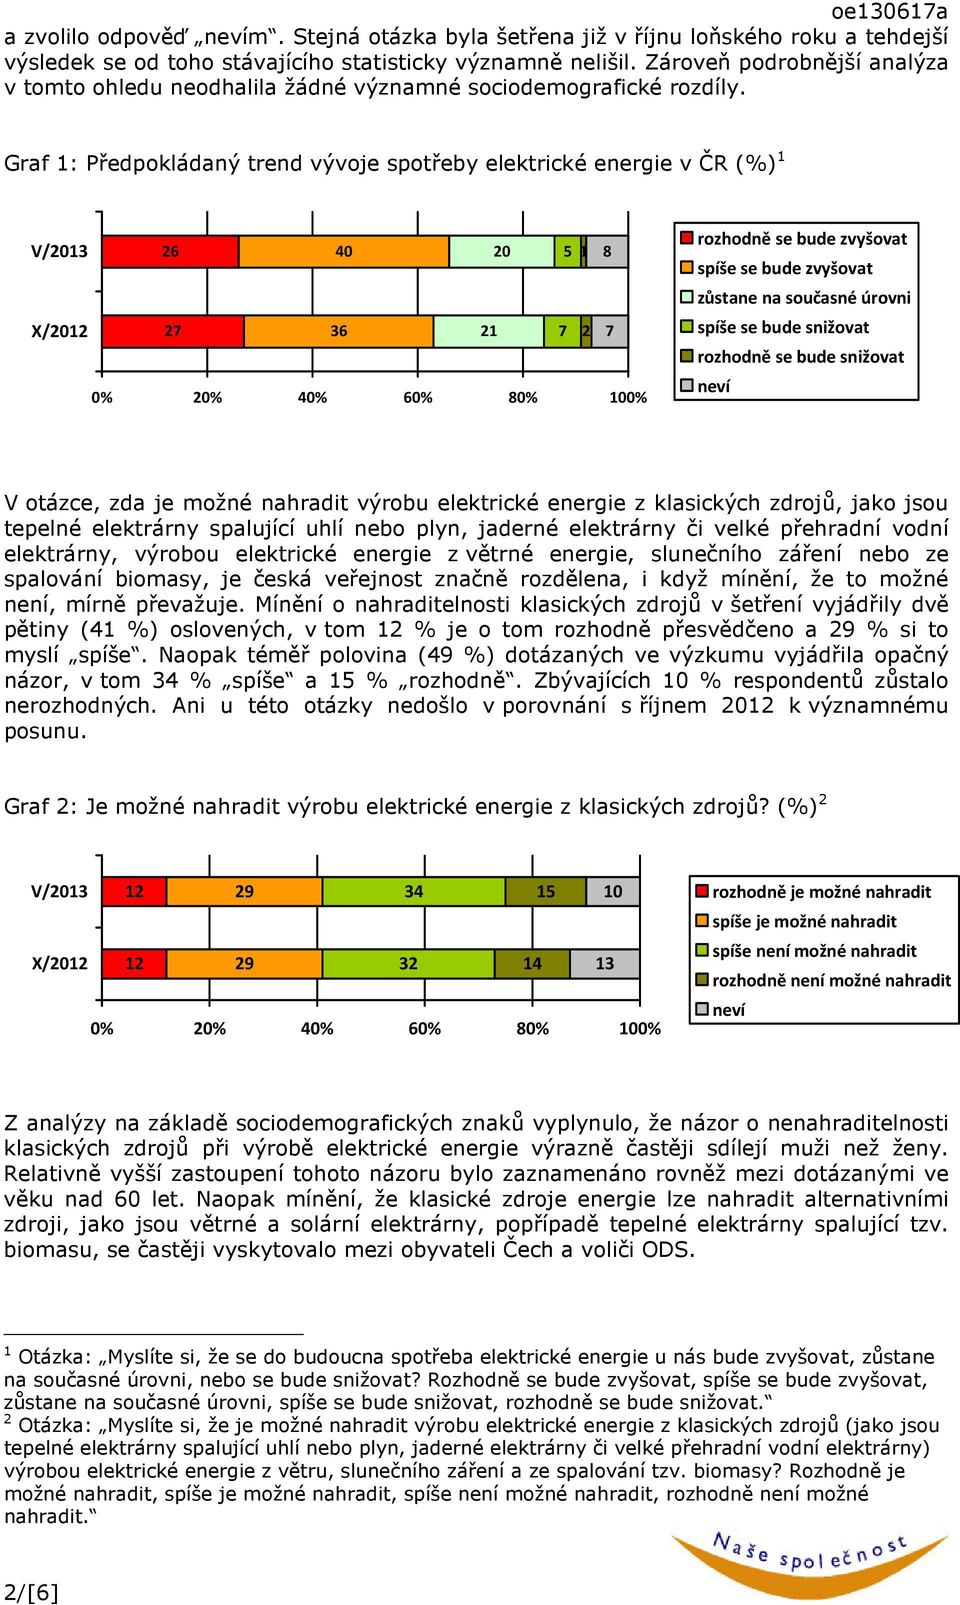 Graf 1: Předpokládaný trend vývoje spotřeby elektrické energie v ČR (%) 1 V/2013 X/2012 26 40 20 5 1 27 36 21 7 2 8 7 rozhodně se bude zvyšovat spíše se bude zvyšovat zůstane na současné úrovni spíše